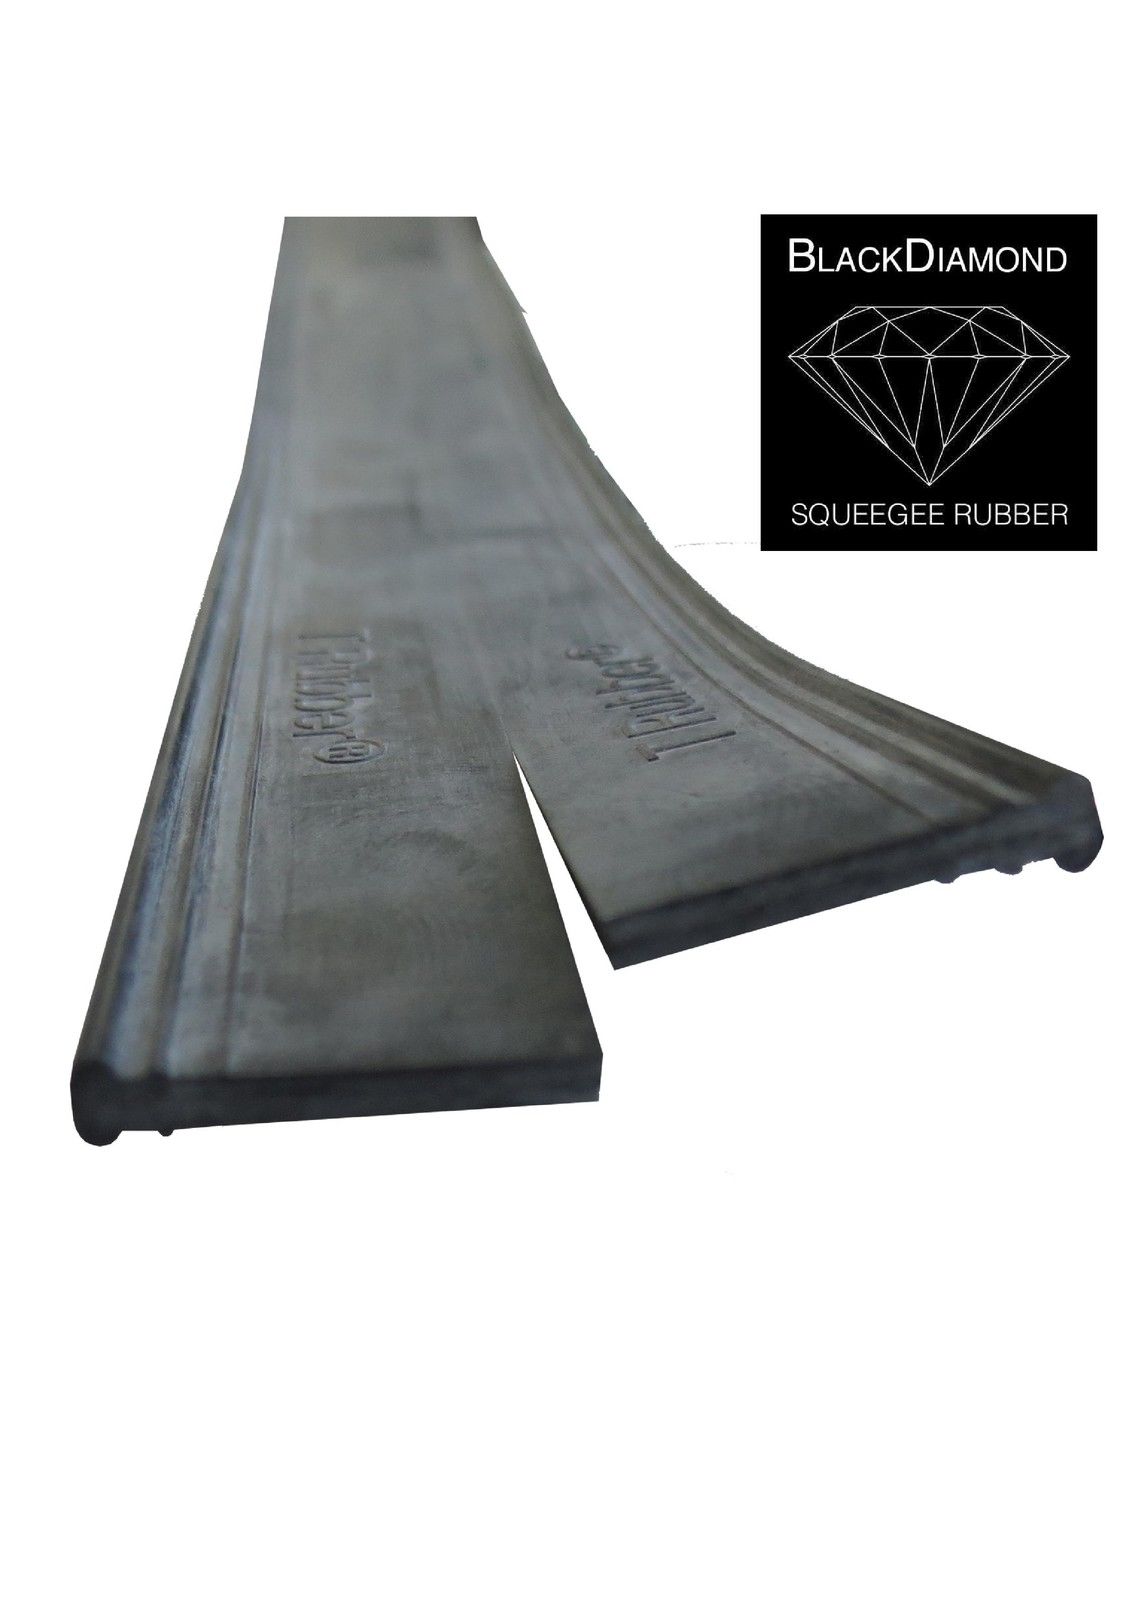 BlackDiamond vinduespudser gummi flad "SPC" 92cm